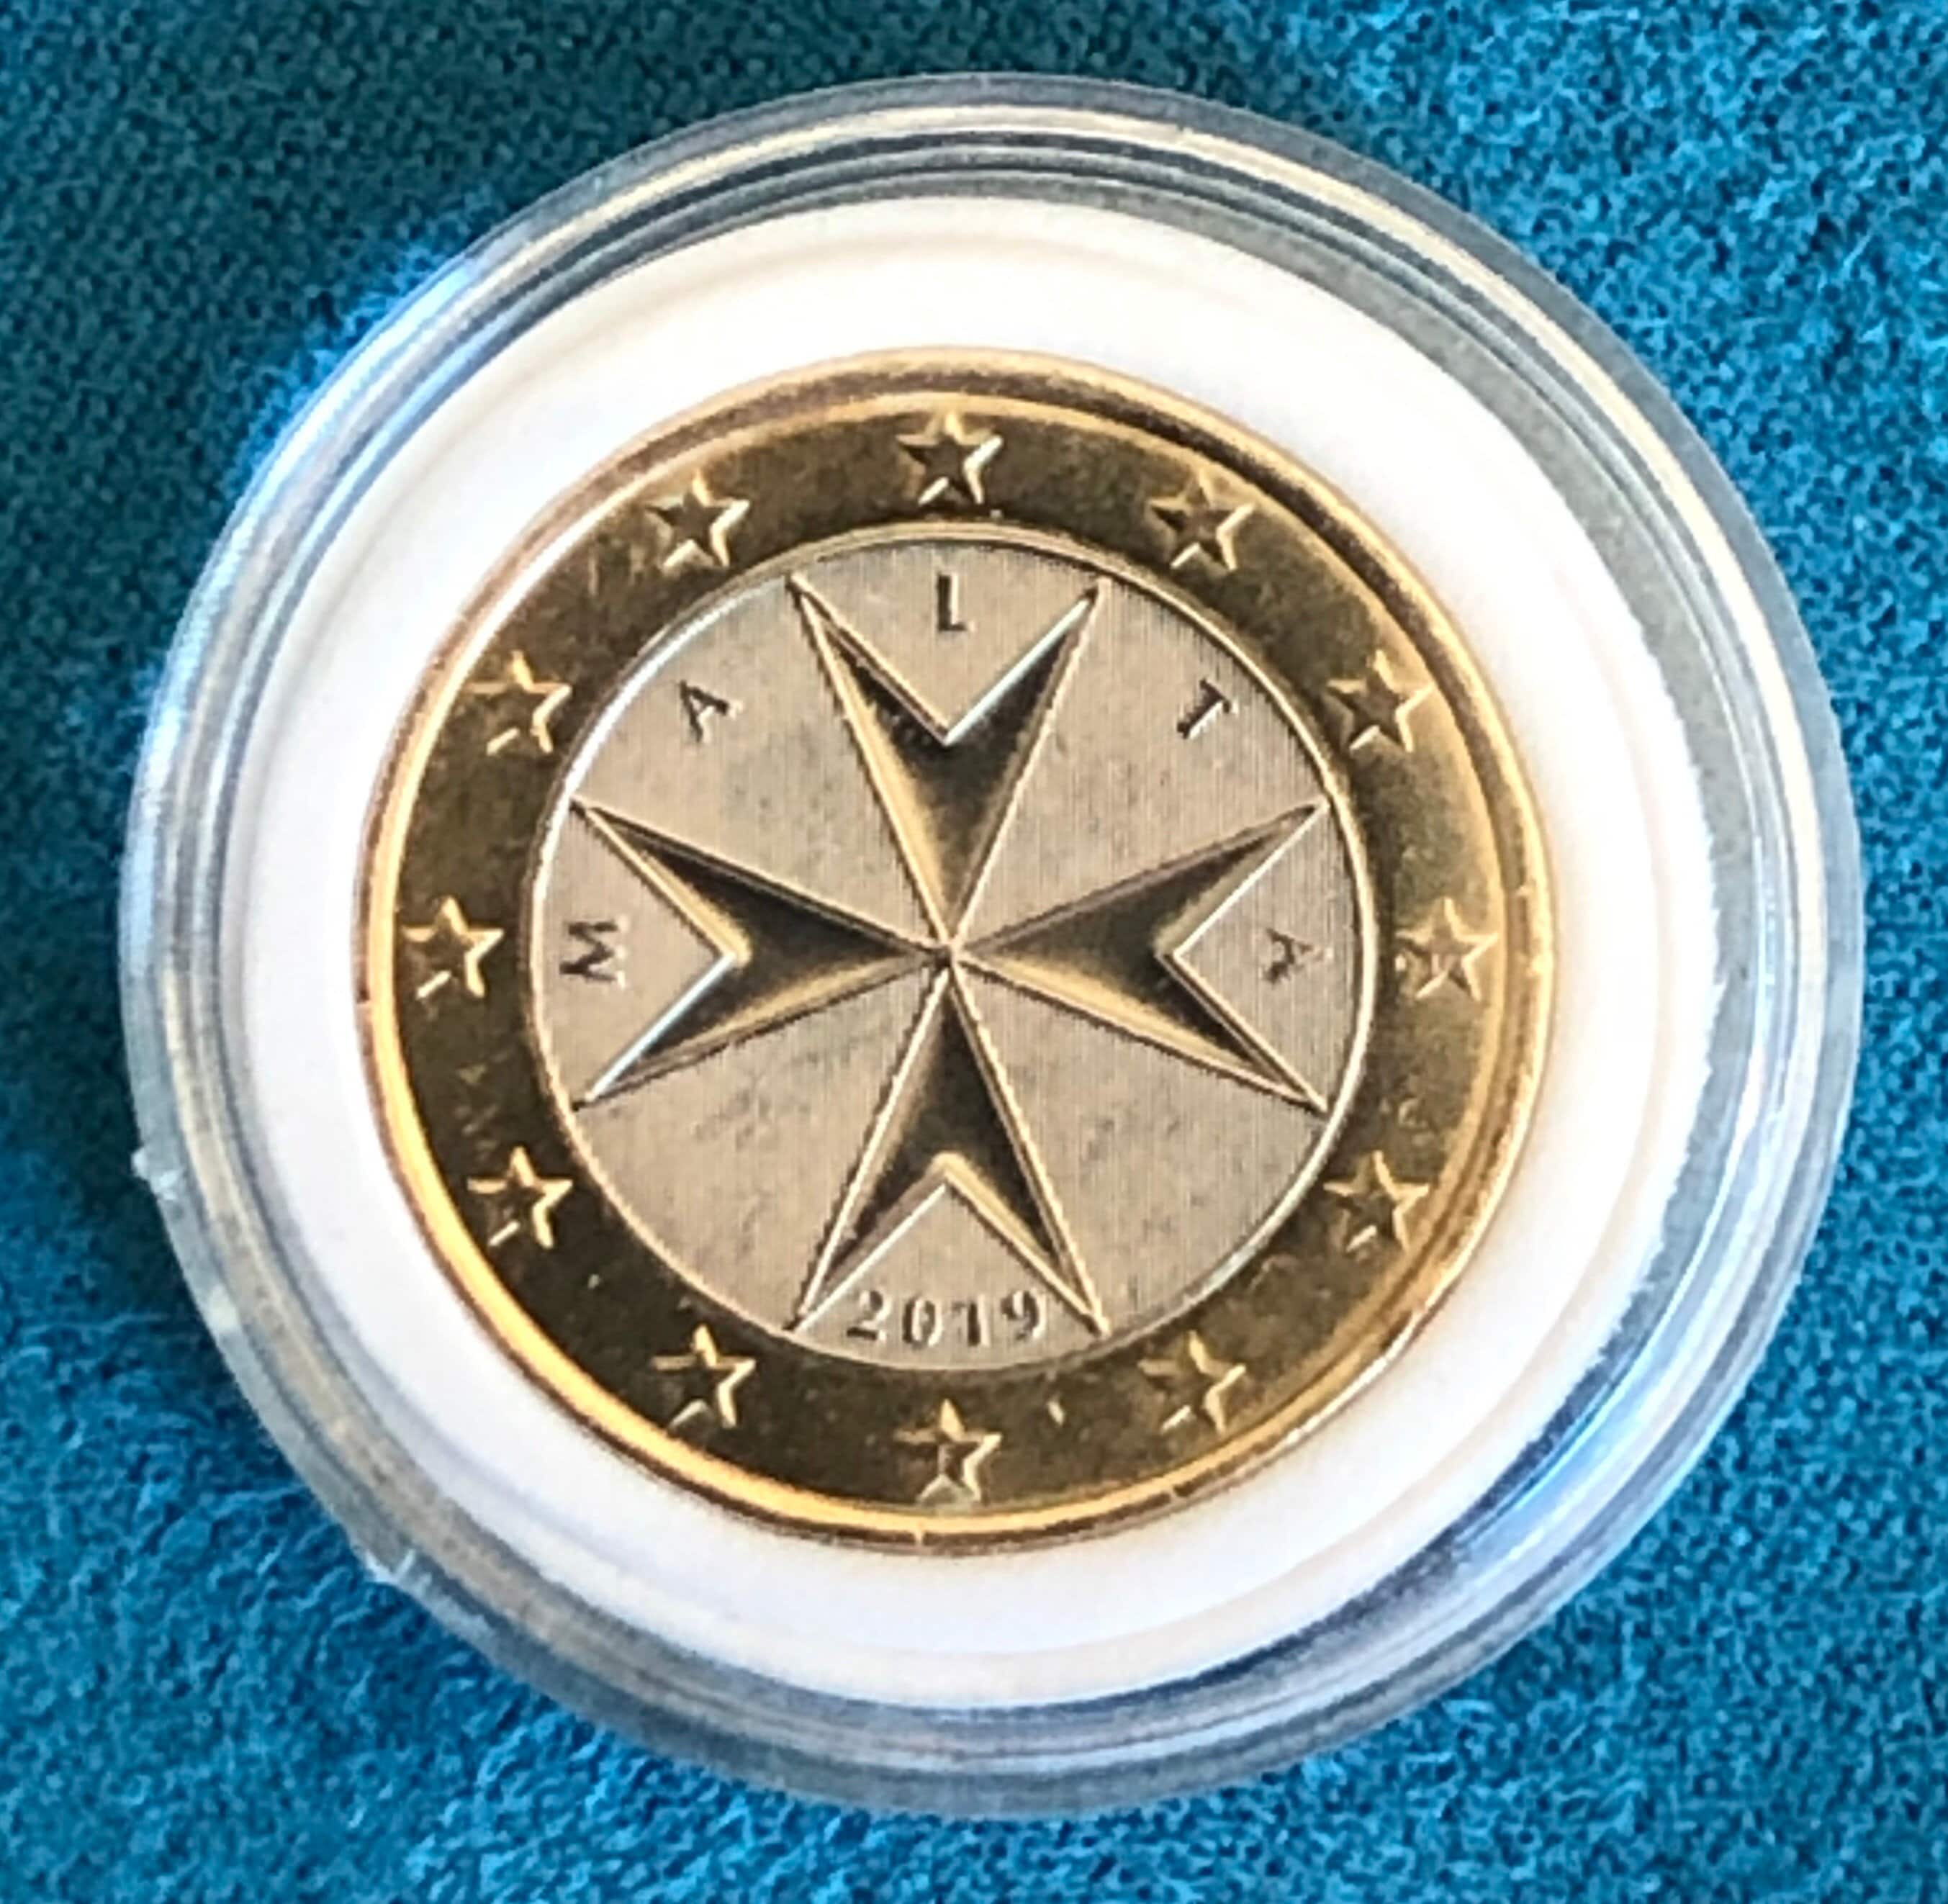 Coin 1 euro Malta Republic 2019 F Rare -  Italia